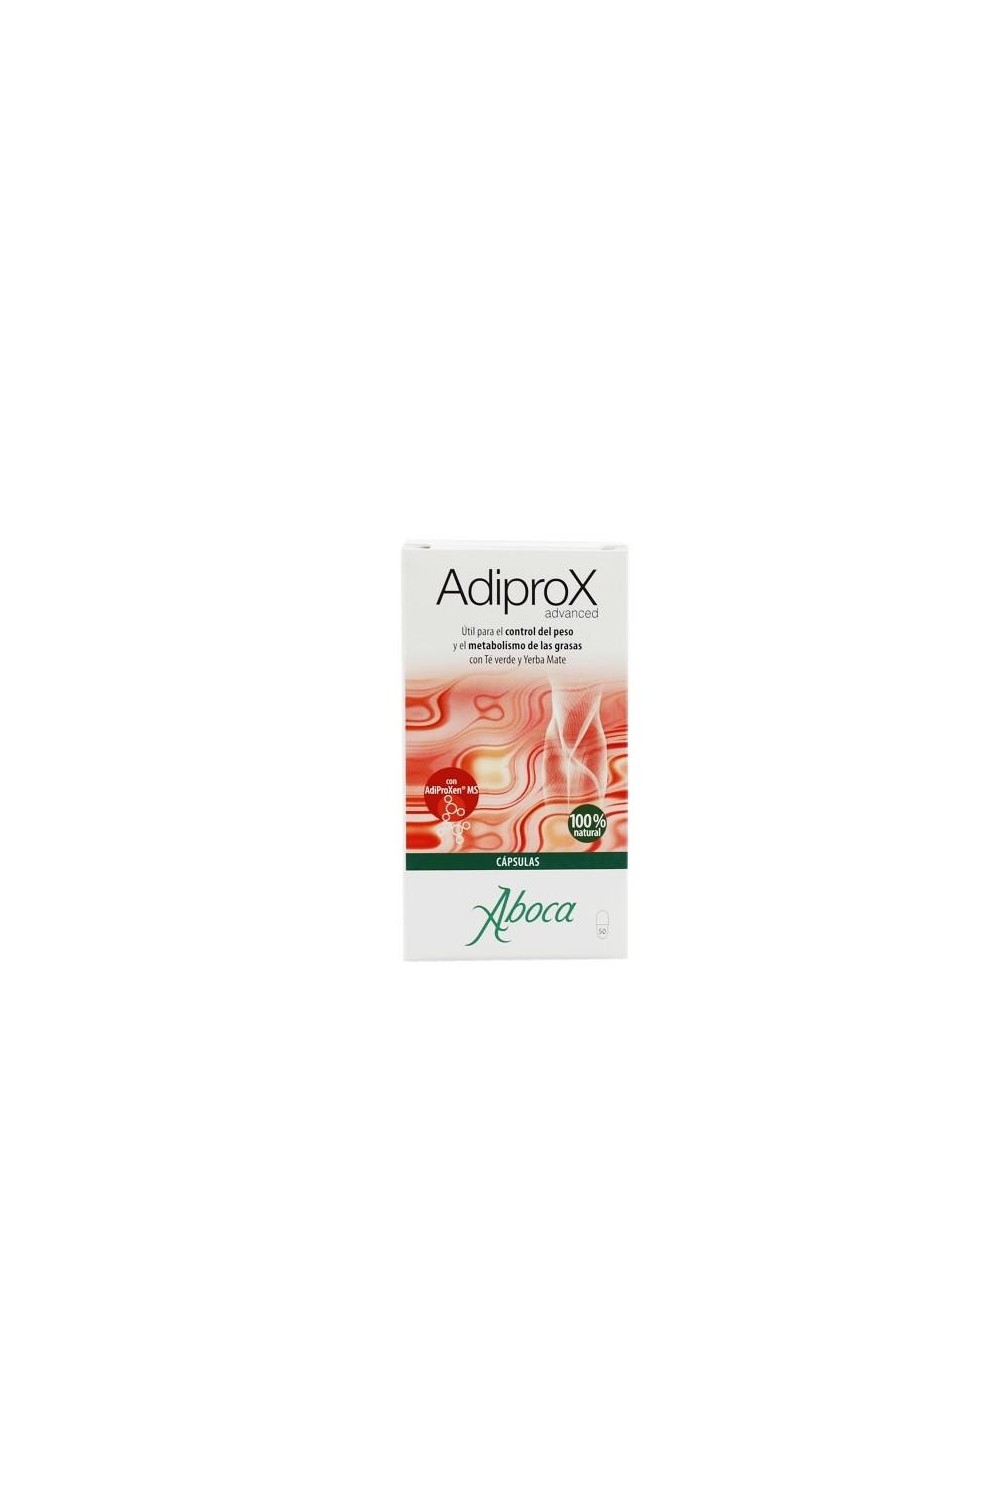 Aboca Adiprox Weight Loss 50 Capsules